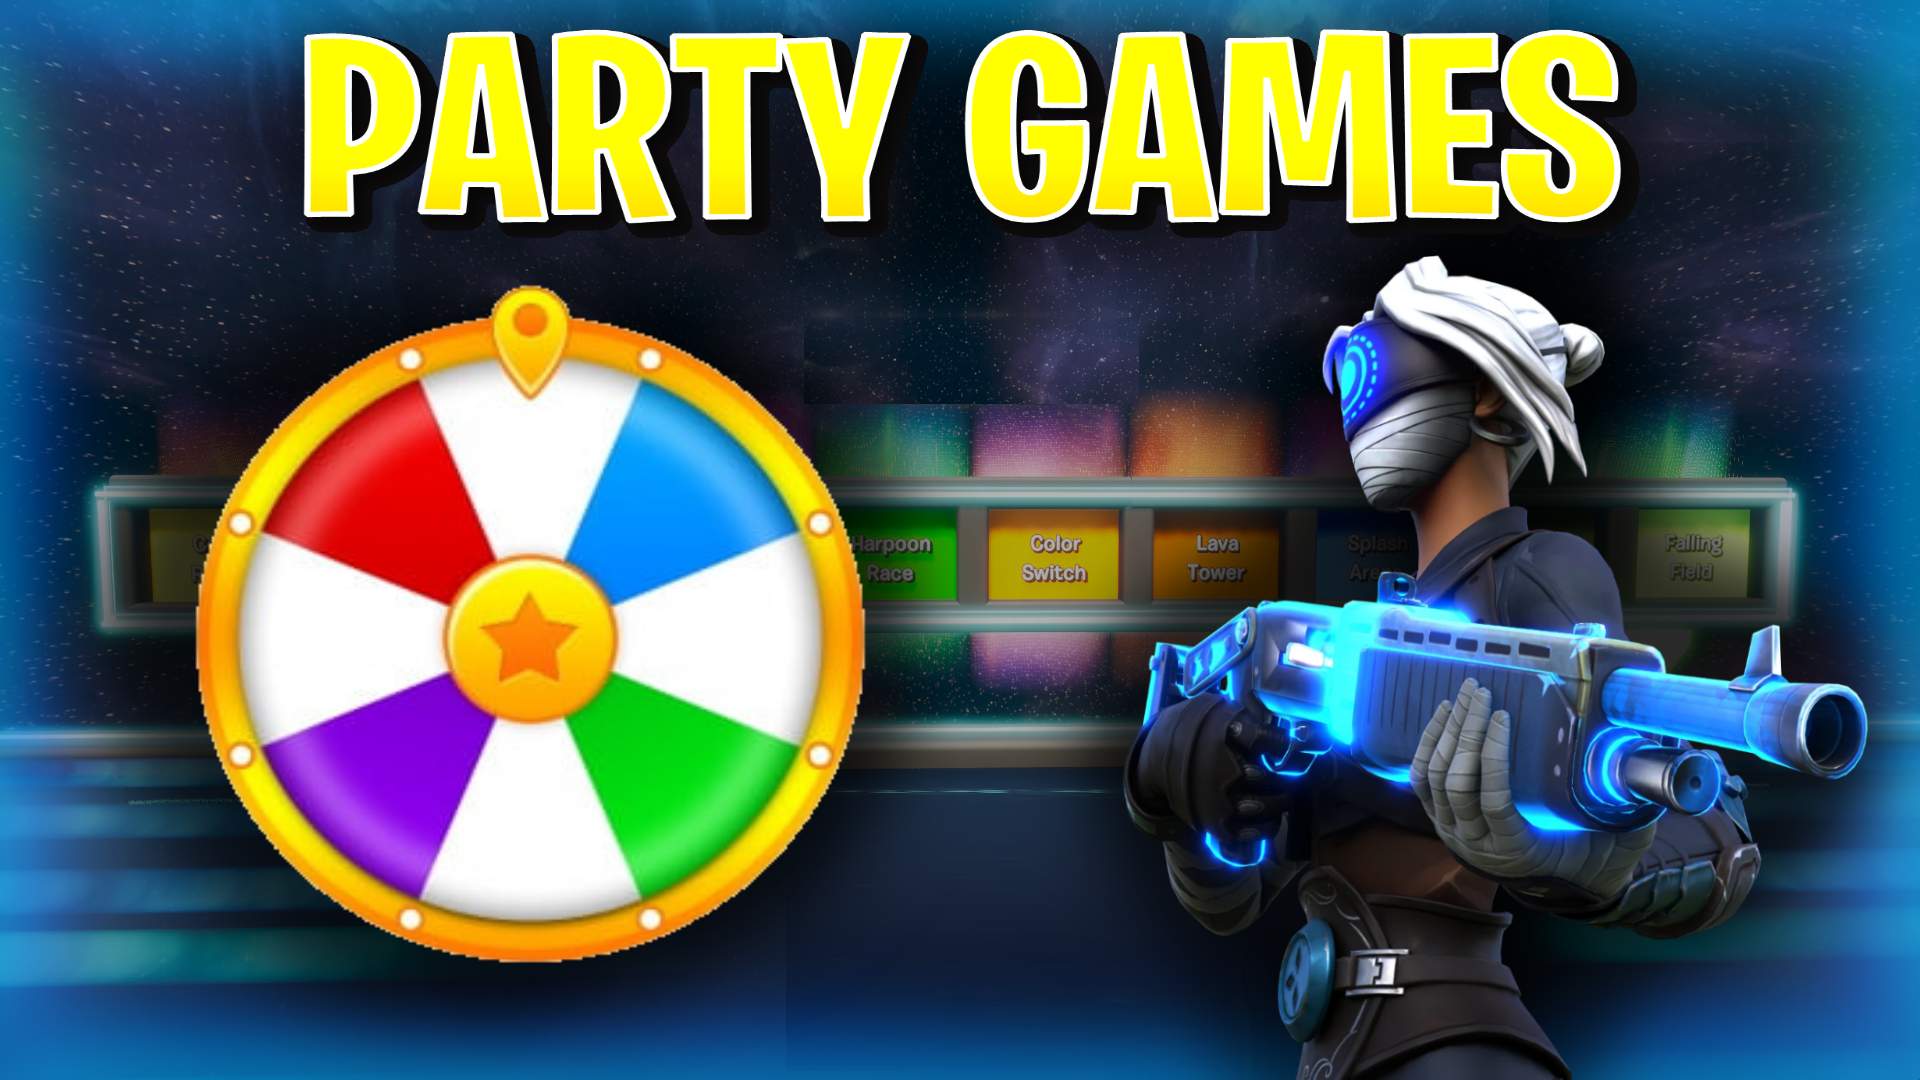 Fun Mini Games On Fortnite Galaxy Party 10 Minigames Fortnite Creative Map Code Dropnite